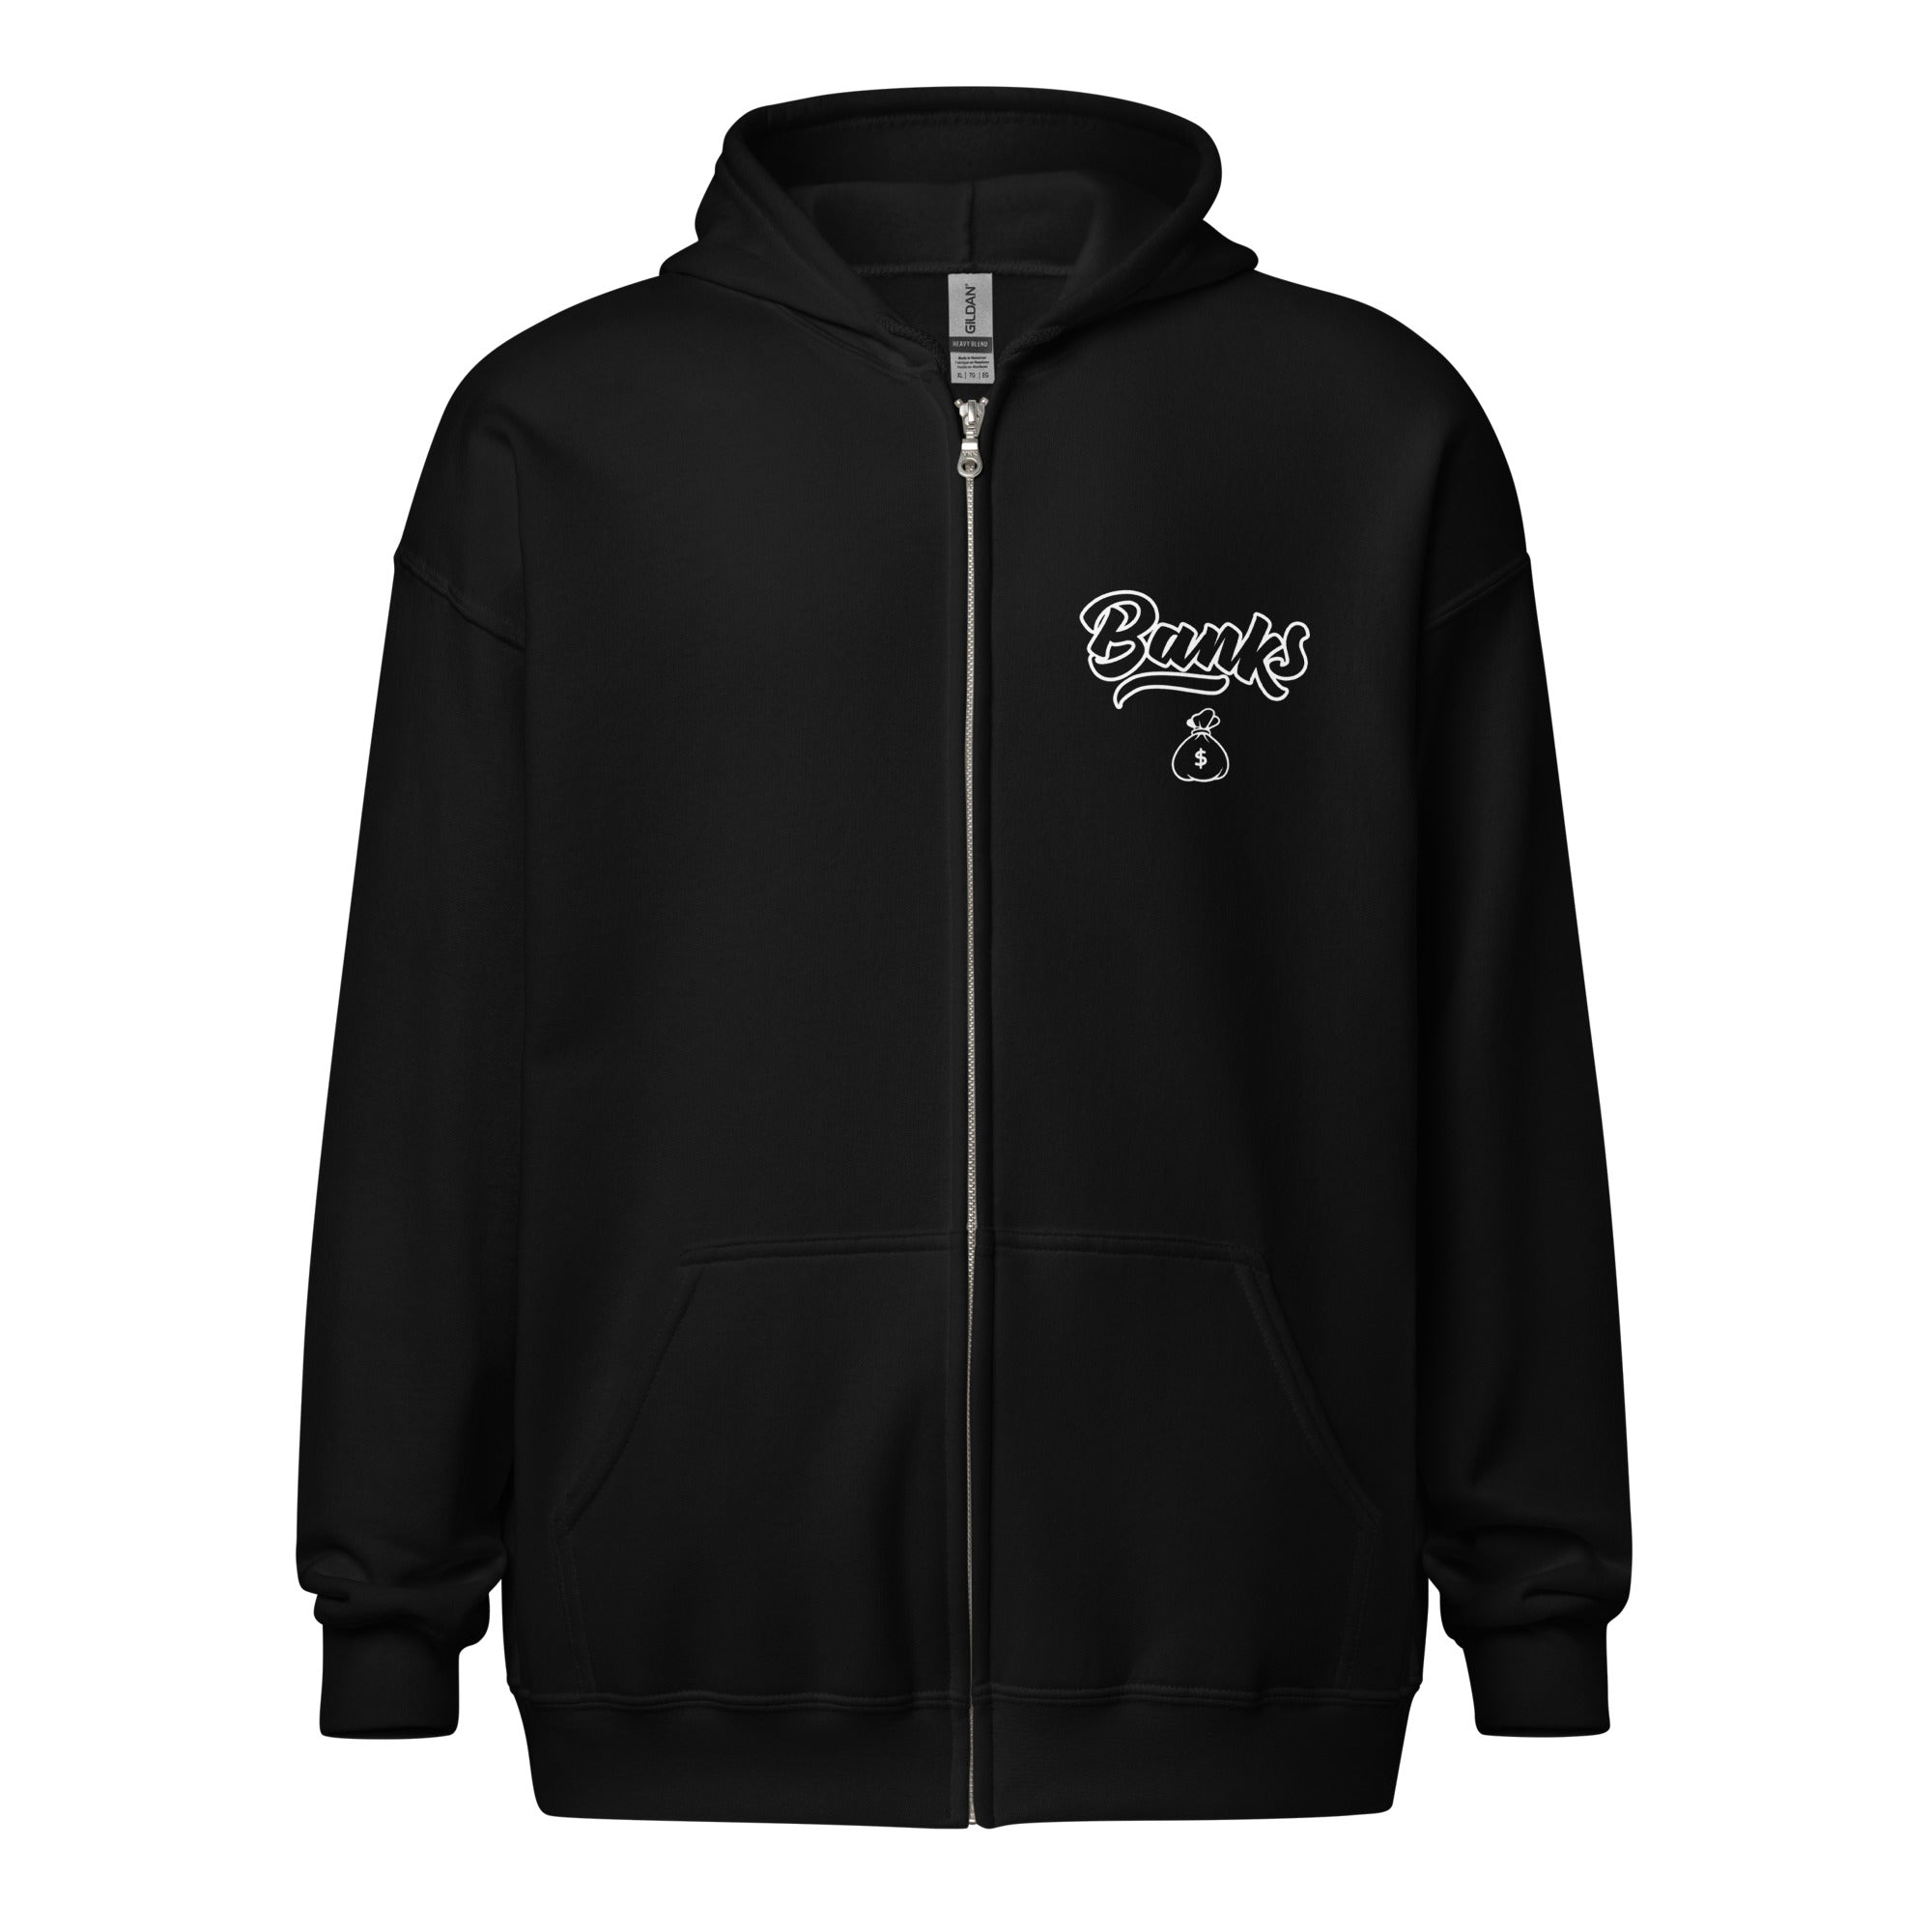 Banks 1433 - heavy blend zip hoodie